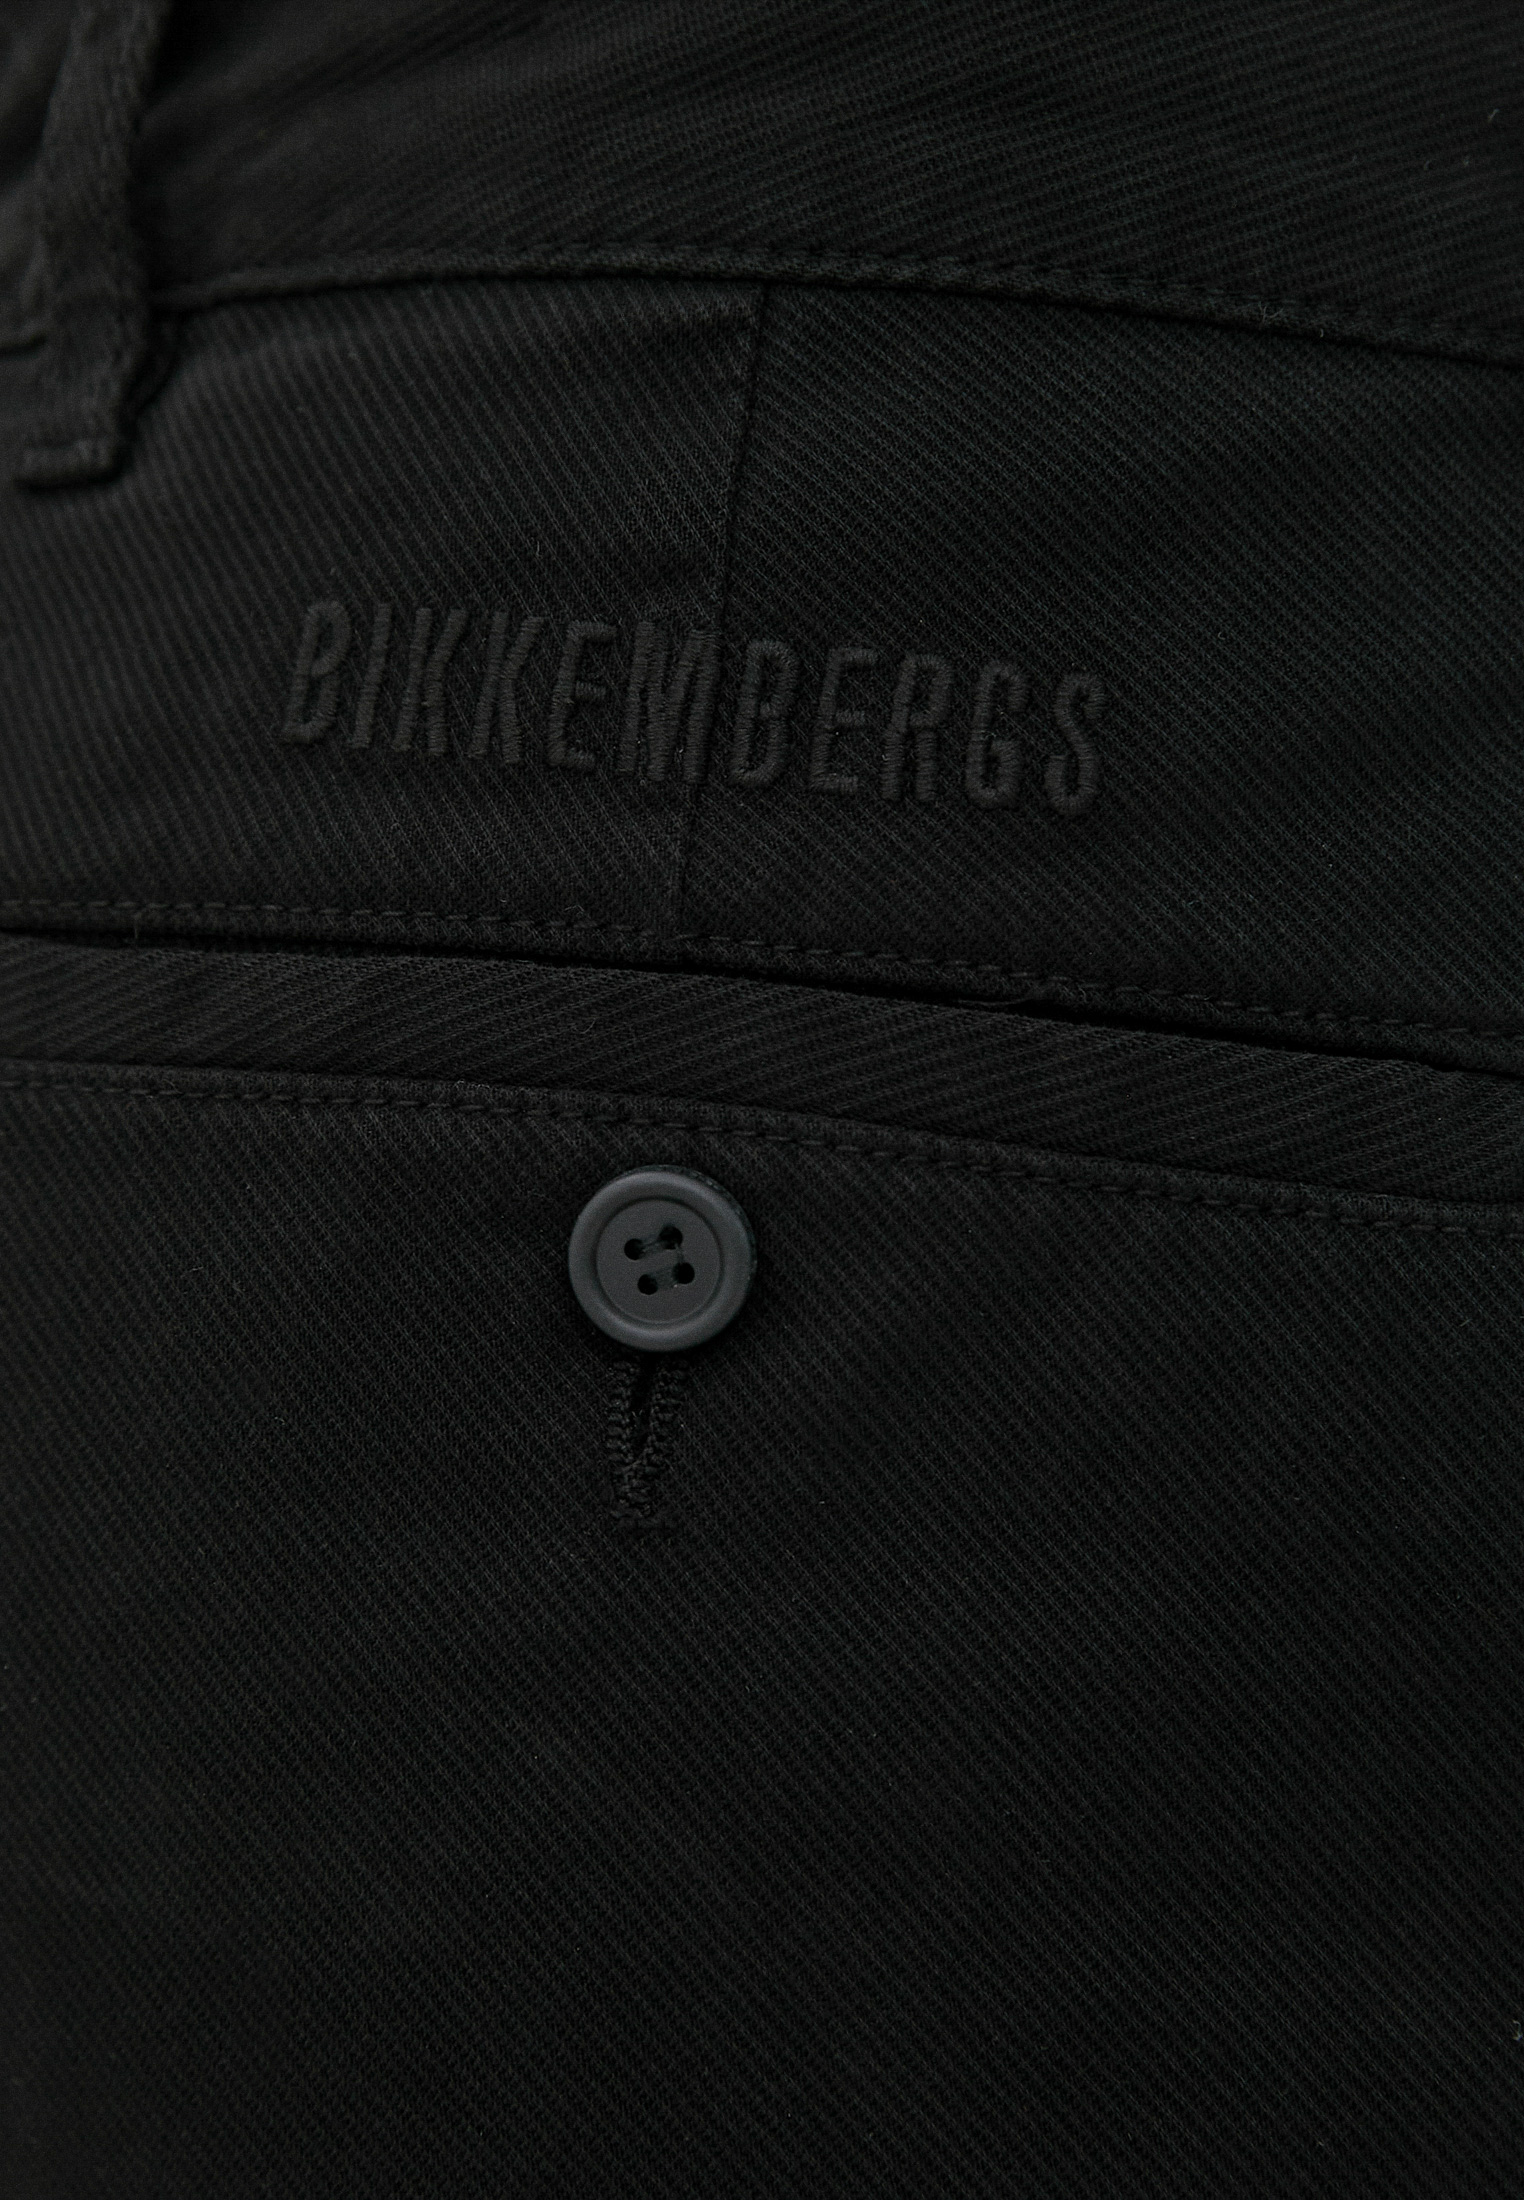 Мужские повседневные брюки Bikkembergs (Биккембергс) C P 001 04 S 3472: изображение 10